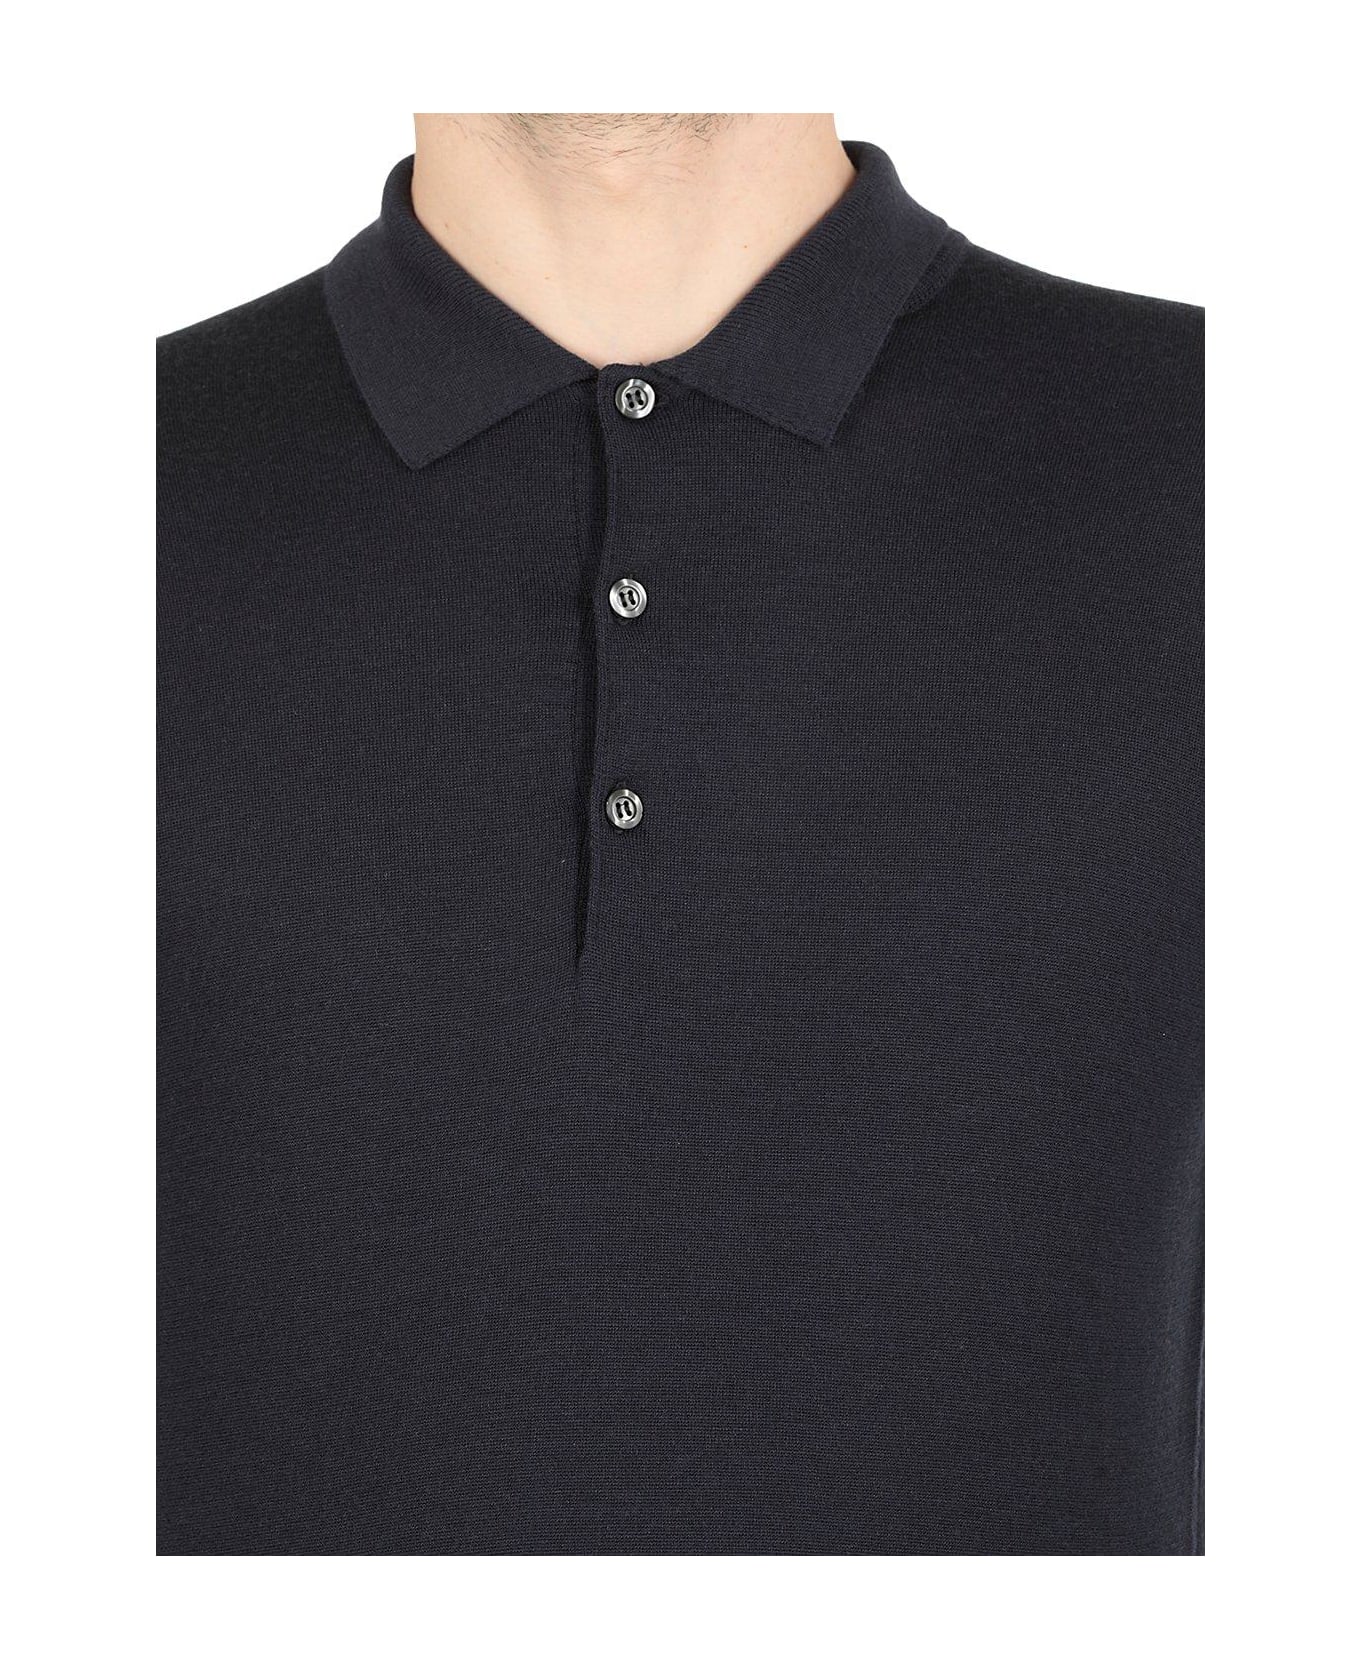 John Smedley Belper Buttoned Knitted Polo Shirt - Midnigt